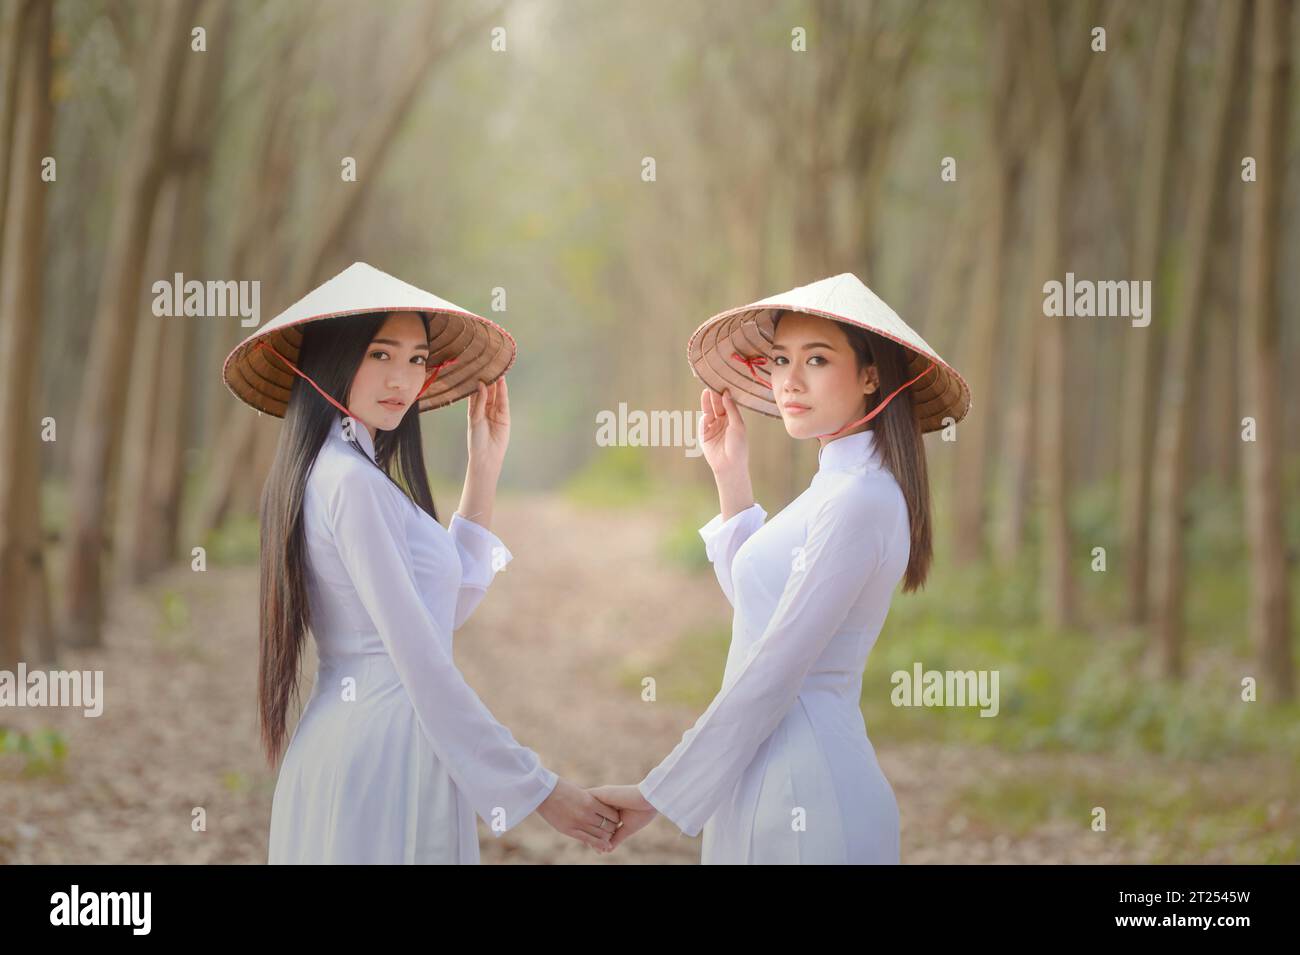 Porträt von zwei asiatischen Frauen in traditioneller Kleidung, die in einem Wald stehen und Hände halten, Vietnam Stockfoto